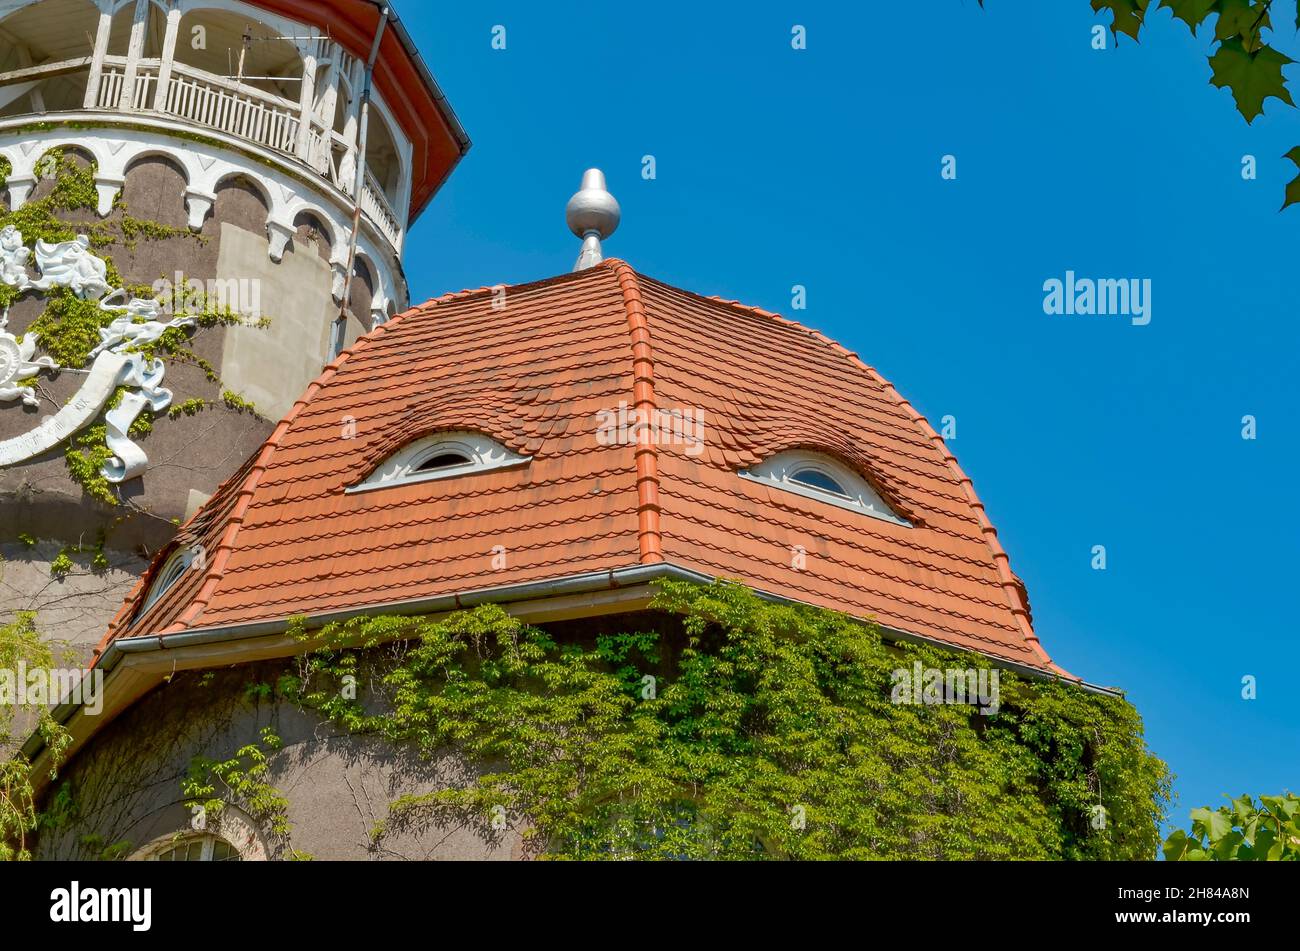 Swetlogorsk, Oblast Königsberg, Russland. Juni - 2. Balneary Gebäude mit Wasserturm. Die Dachfenster des Gebäudes sehen aus wie menschliche Augen Stockfoto